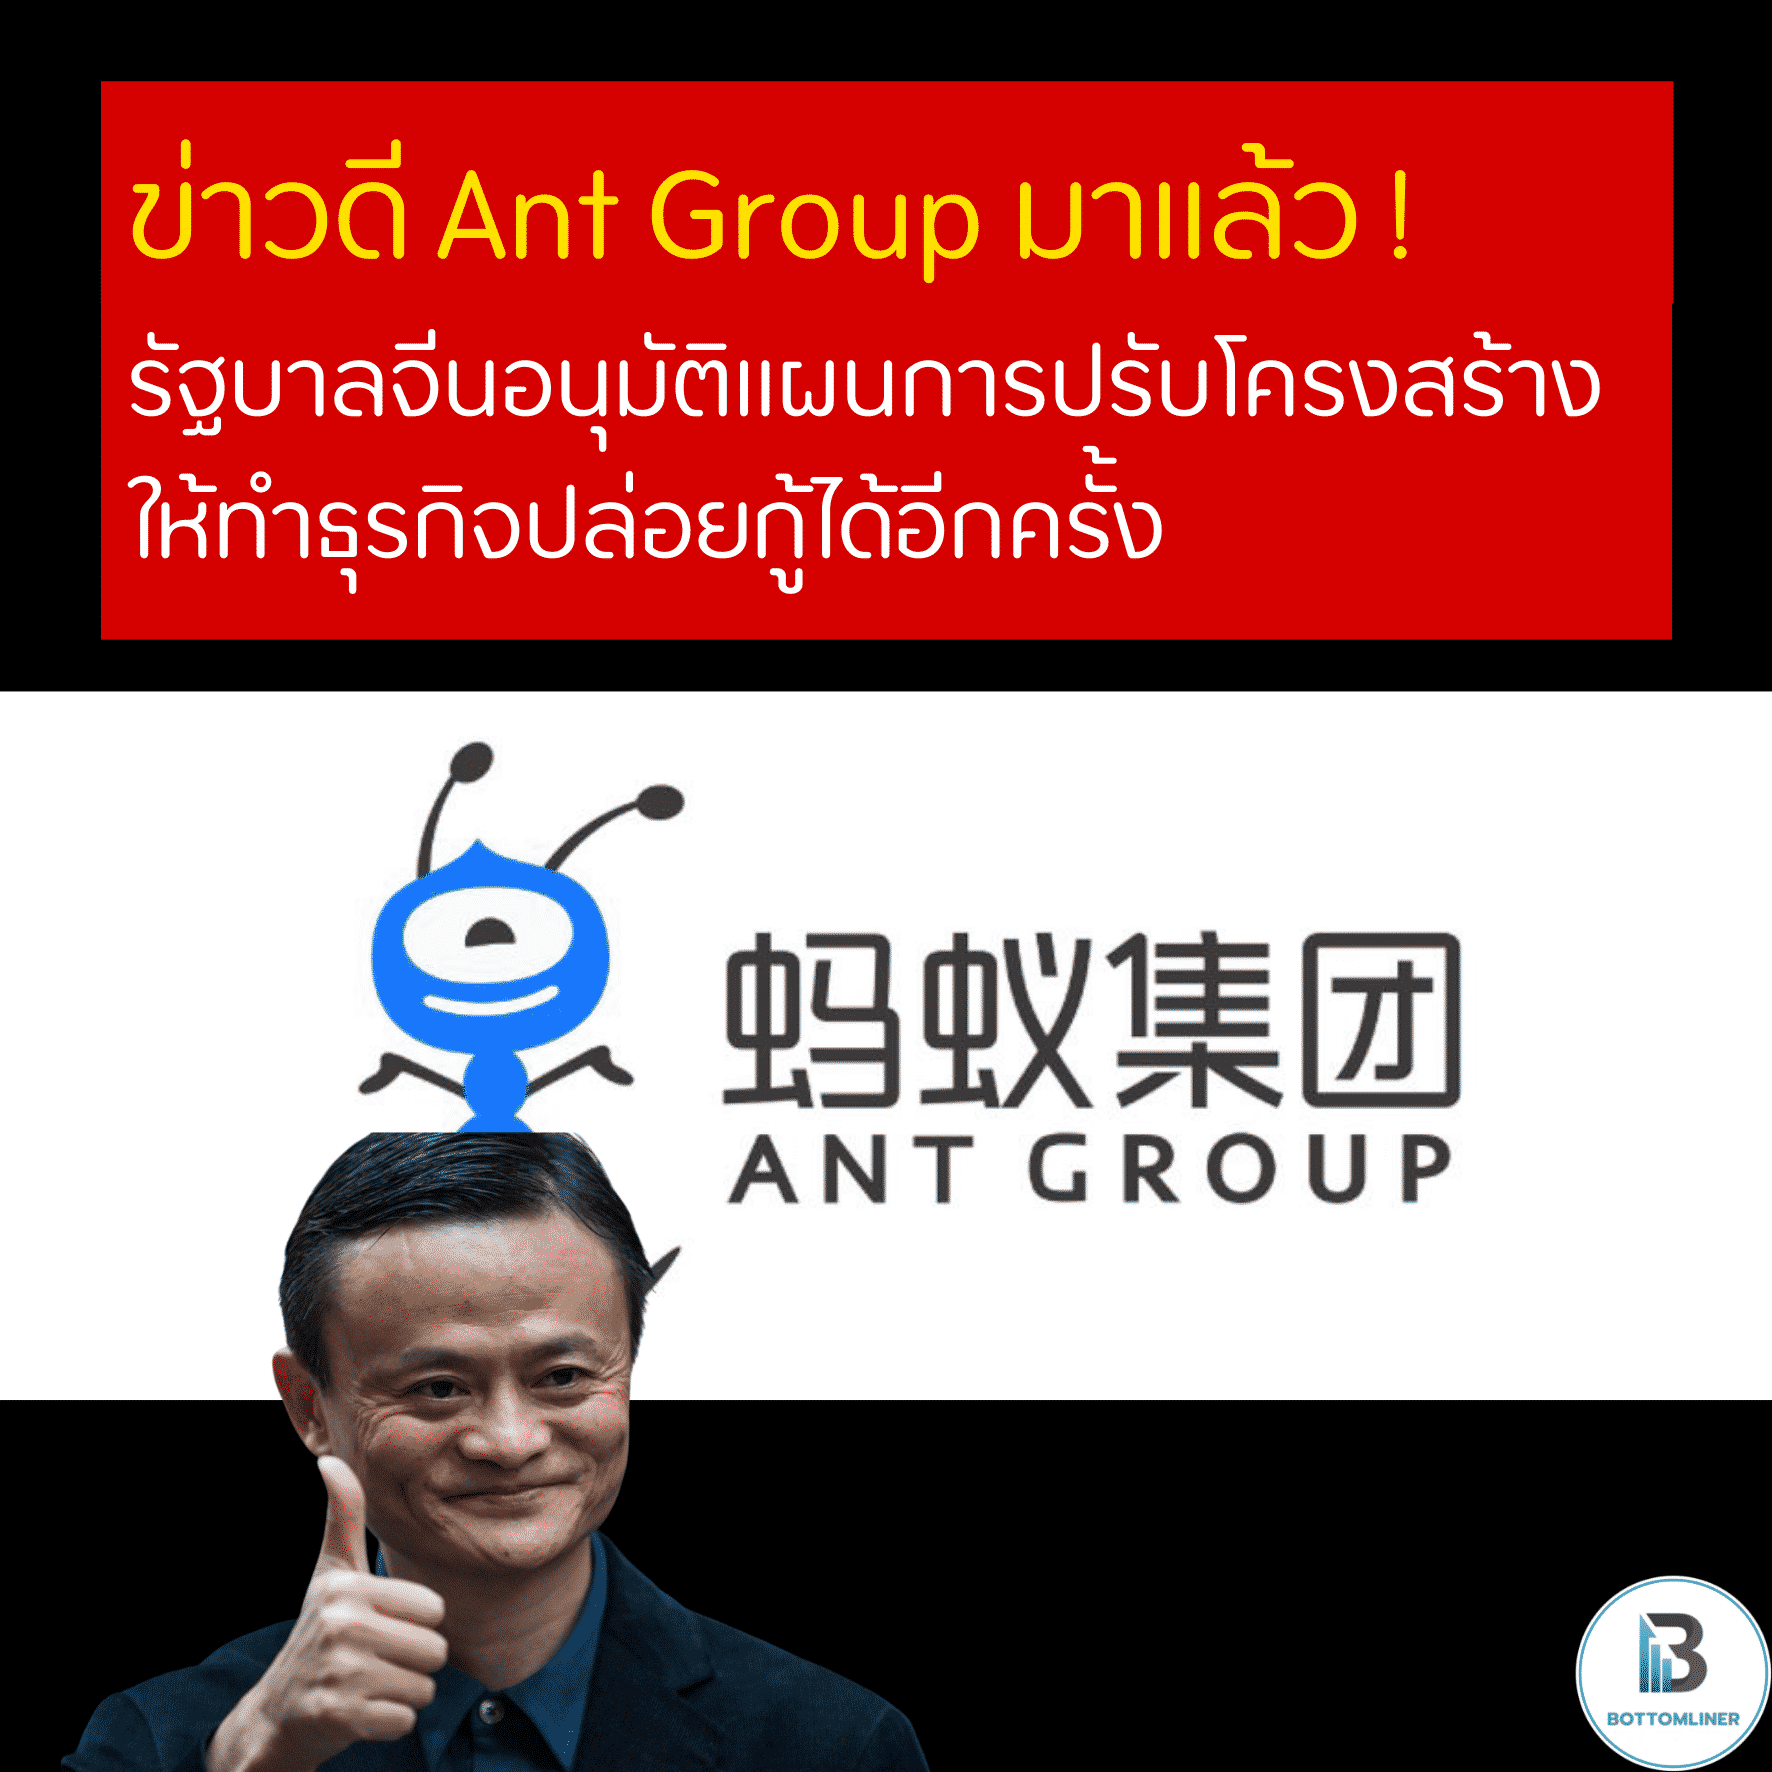 ข่าวดี Ant Group มาแล้ว ! รัฐบาลจีนอนุมัติแผนการปรับโครงสร้าง ให้ทำธุรกิจปล่อยกู้ได้อีกครั้ง